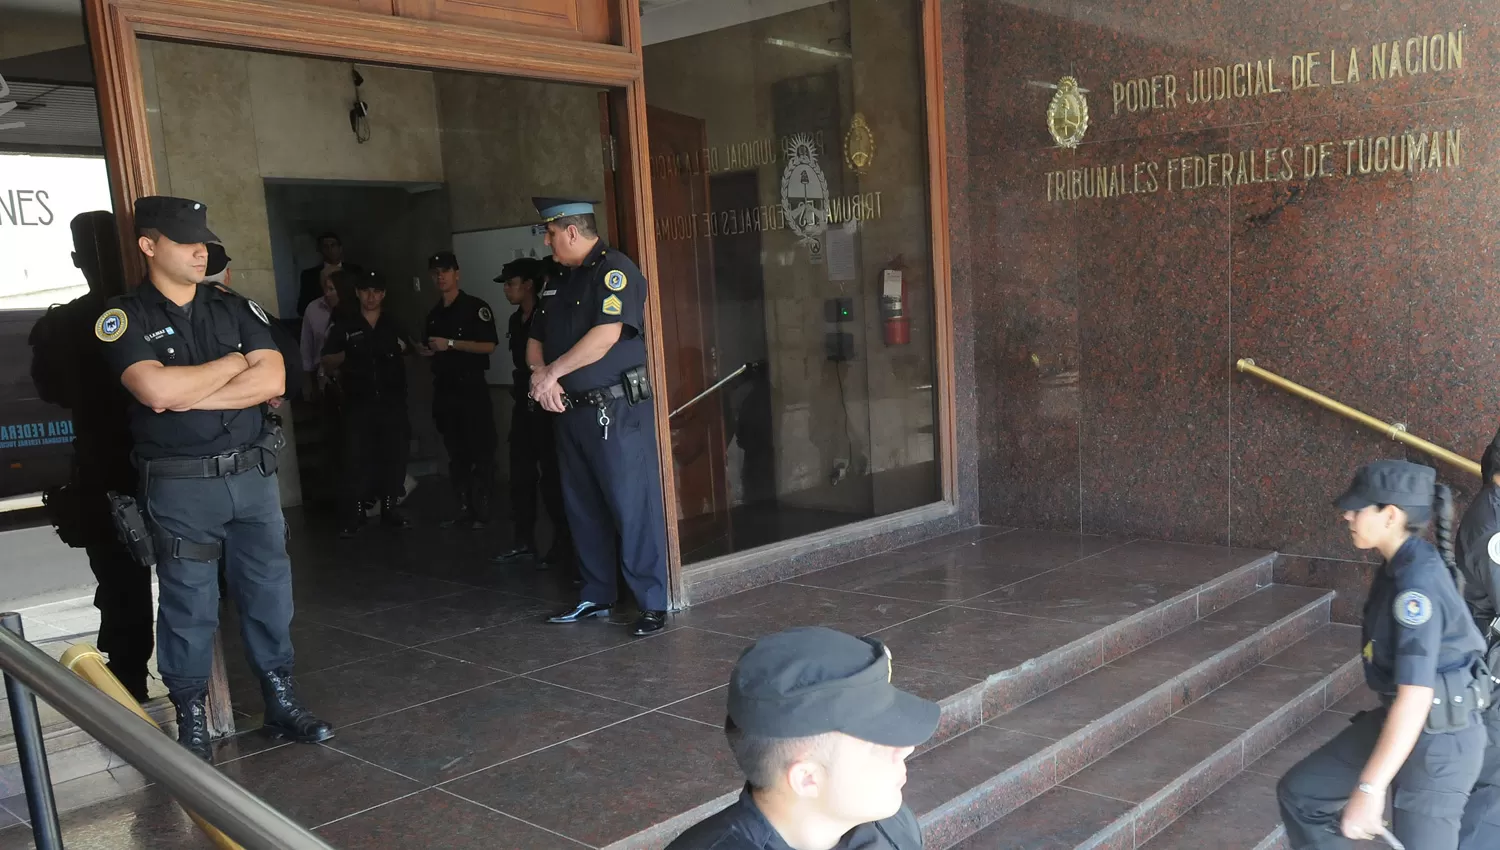 TRIBUNALES FEDERALES. Policías custodian la sede de la Justicia Federal en Tucumán. ARCHIVO